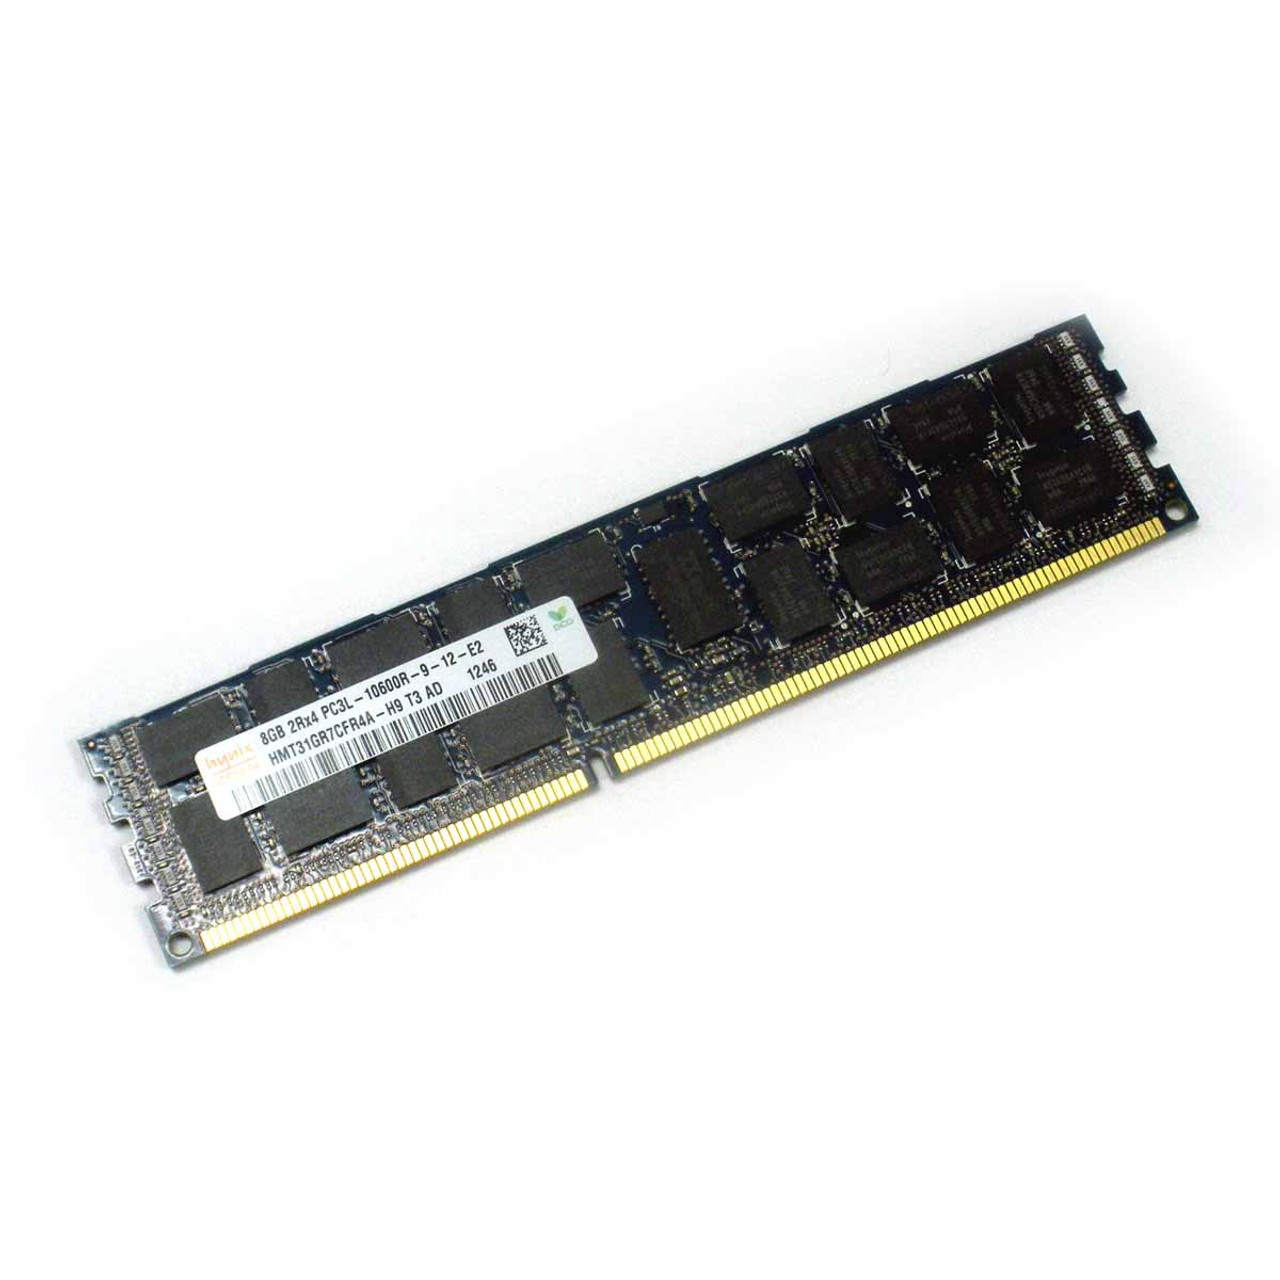 Dell Memory 8GB PC3L-10600R 1333MHz